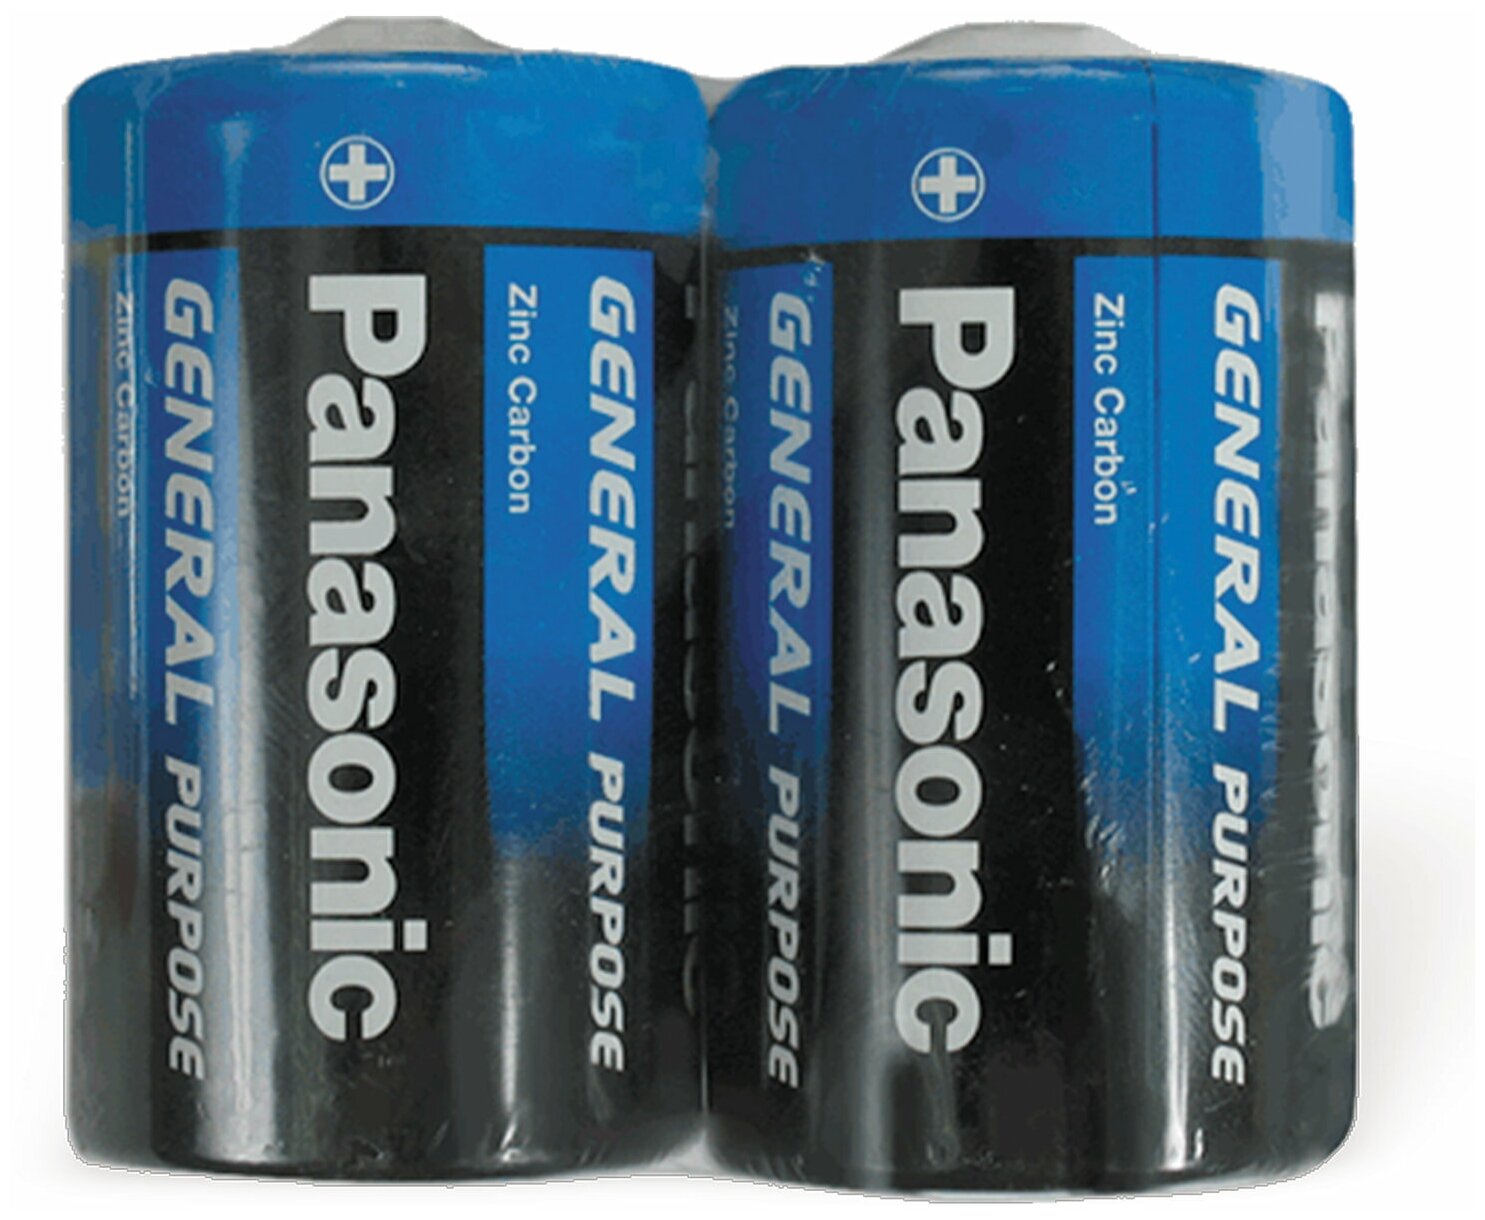 Батарейки комплект 2шт, PANASONIC D R20 (373), солевые, в пленке, 1.5 В - 1 шт.